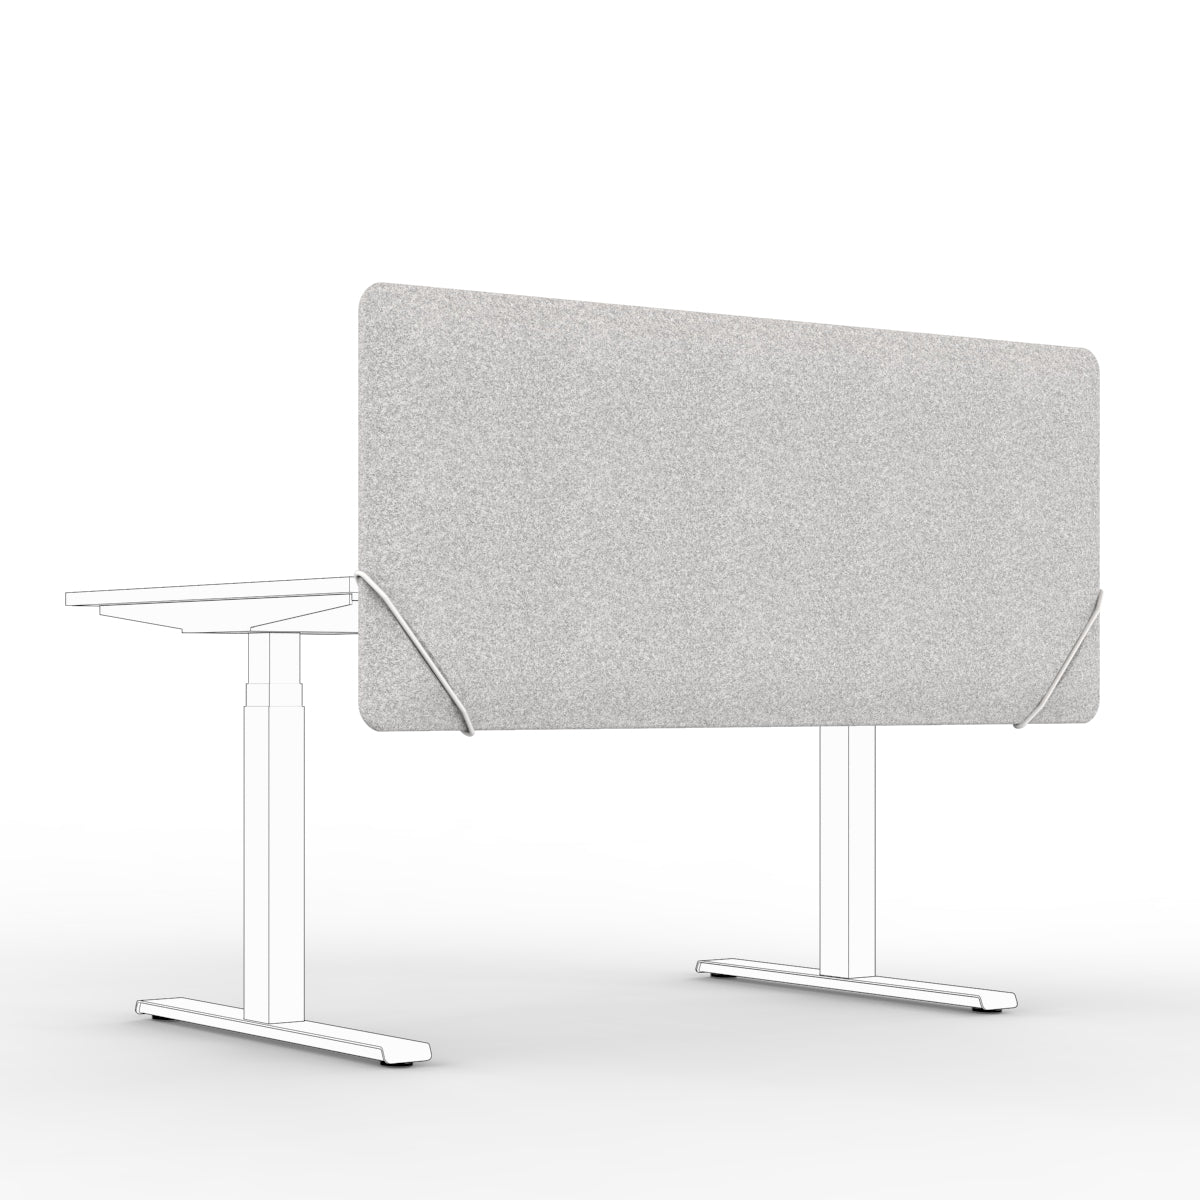 Sound absorbing table divider in light grey felt with white slide on table mounts. Bordskjerm for skrivebord. Avskjerming og lyddemping på kontor